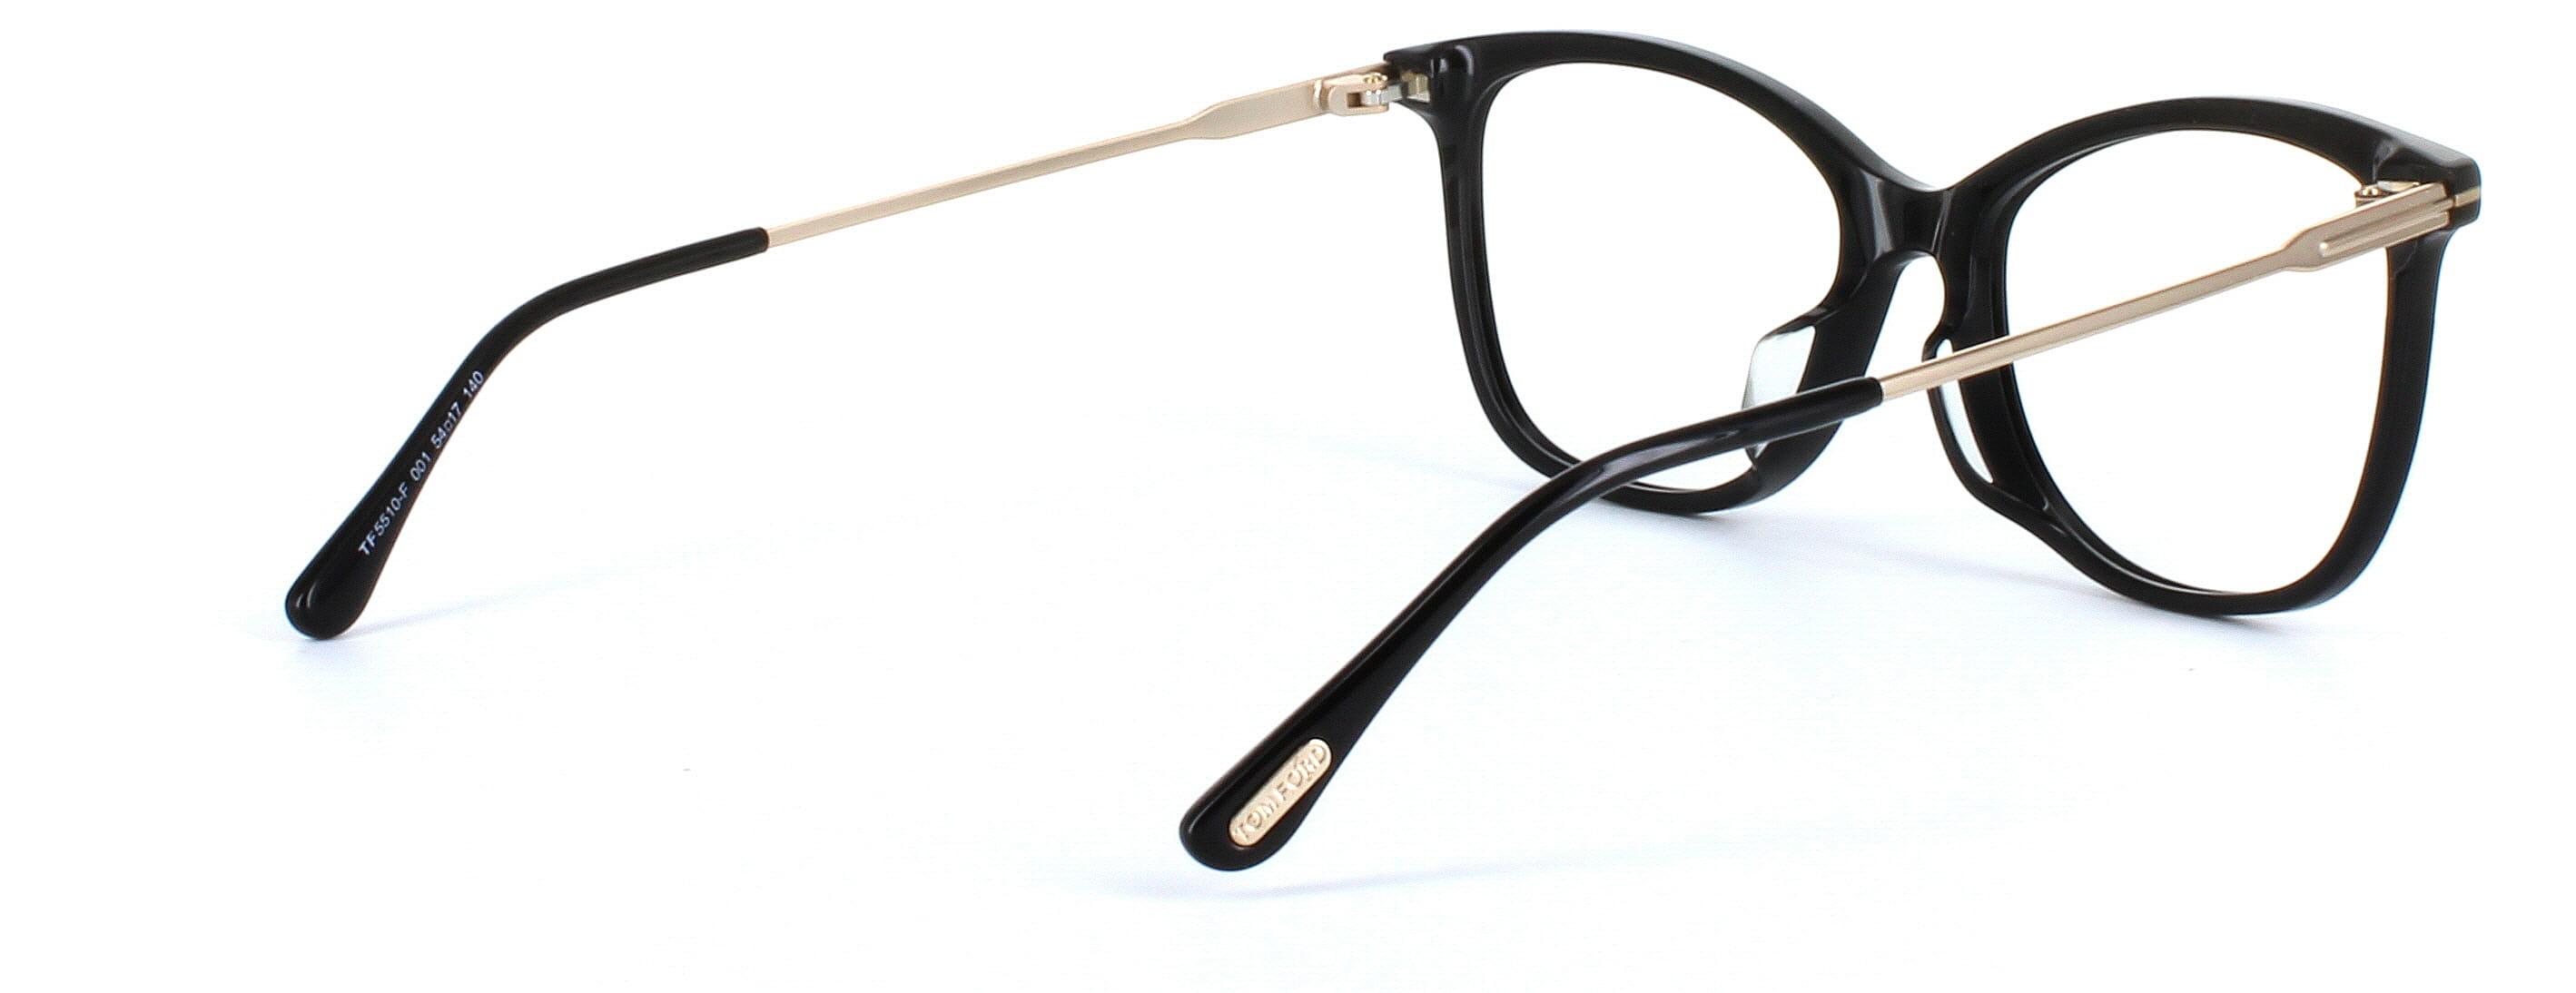 Tom Ford 5510 - Women's black acetate glasses - image 4